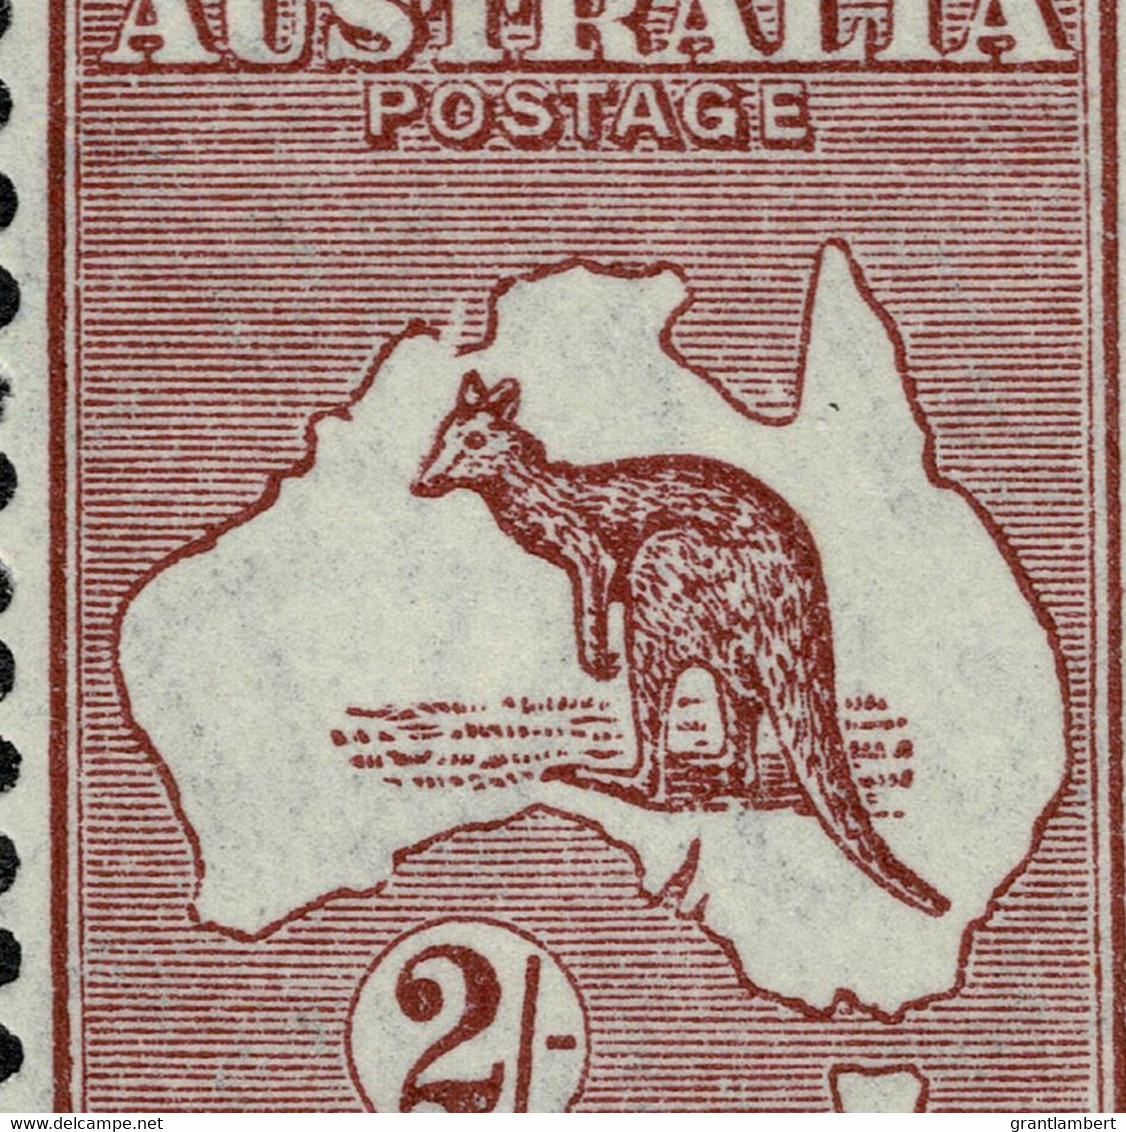 Australia 1935 Kangaroo 2/- Maroon C Of A Wmk Die II Corner Pair MNH - Variety - Mint Stamps